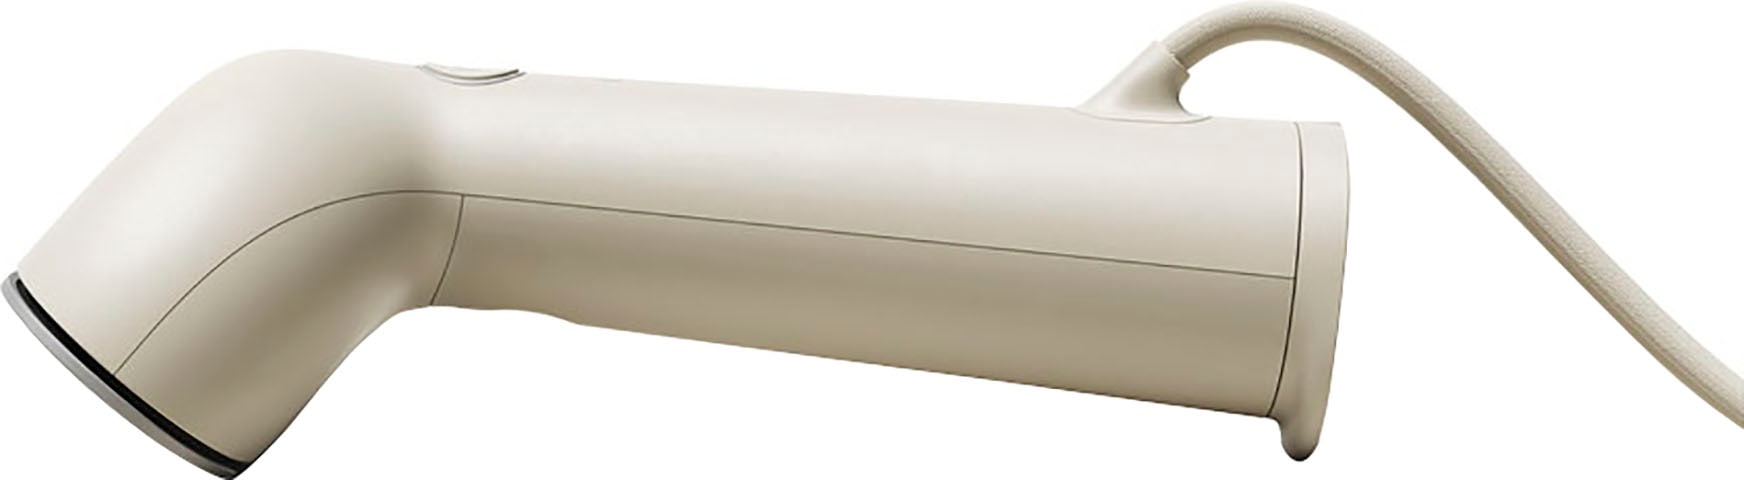 Steamery Dampfbürste »Cirrus No. 3 Iron CI30201EU«, 1200 W, beige